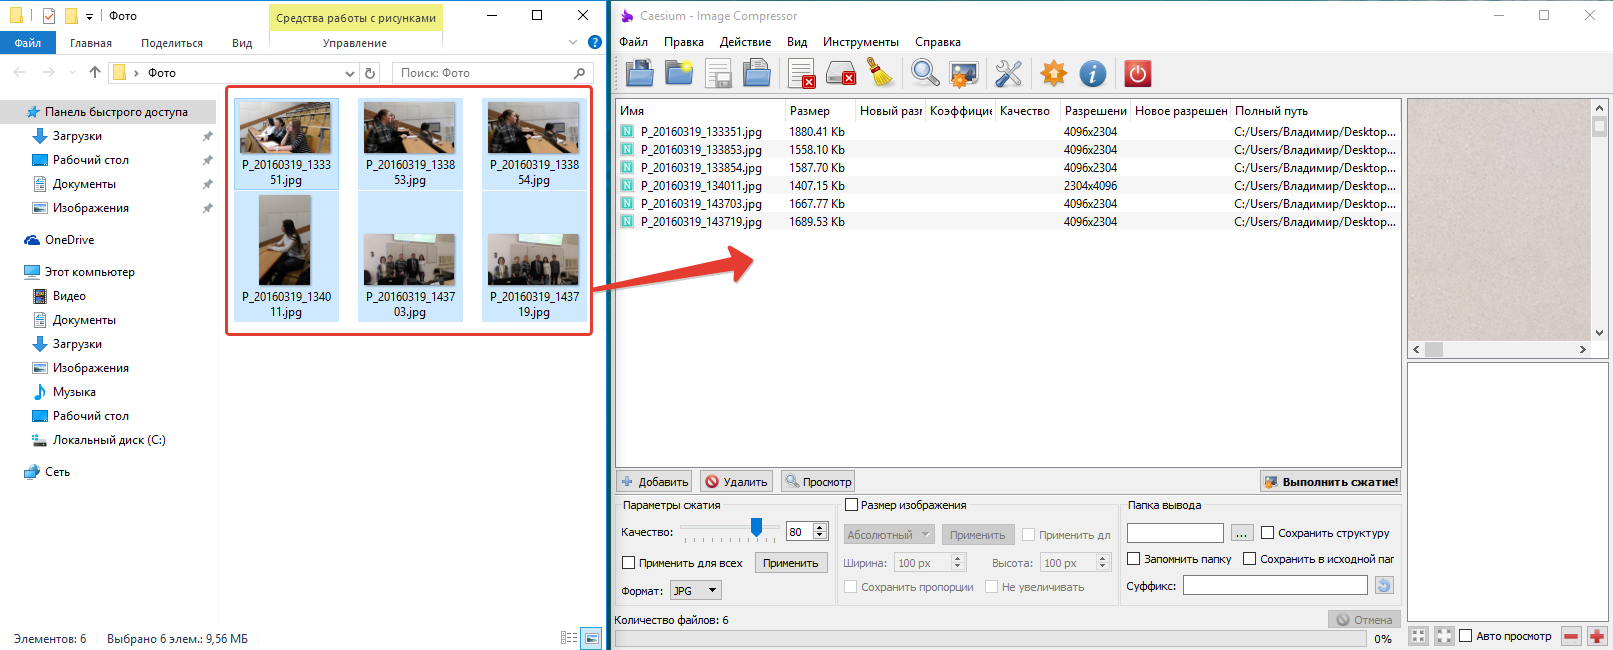 Сжать jpeg файл. Программа для сжатия картинок. Программа для сжатия jpg. Программа для уменьшения фото. Программа для уменьшения размера фото без потери качества.